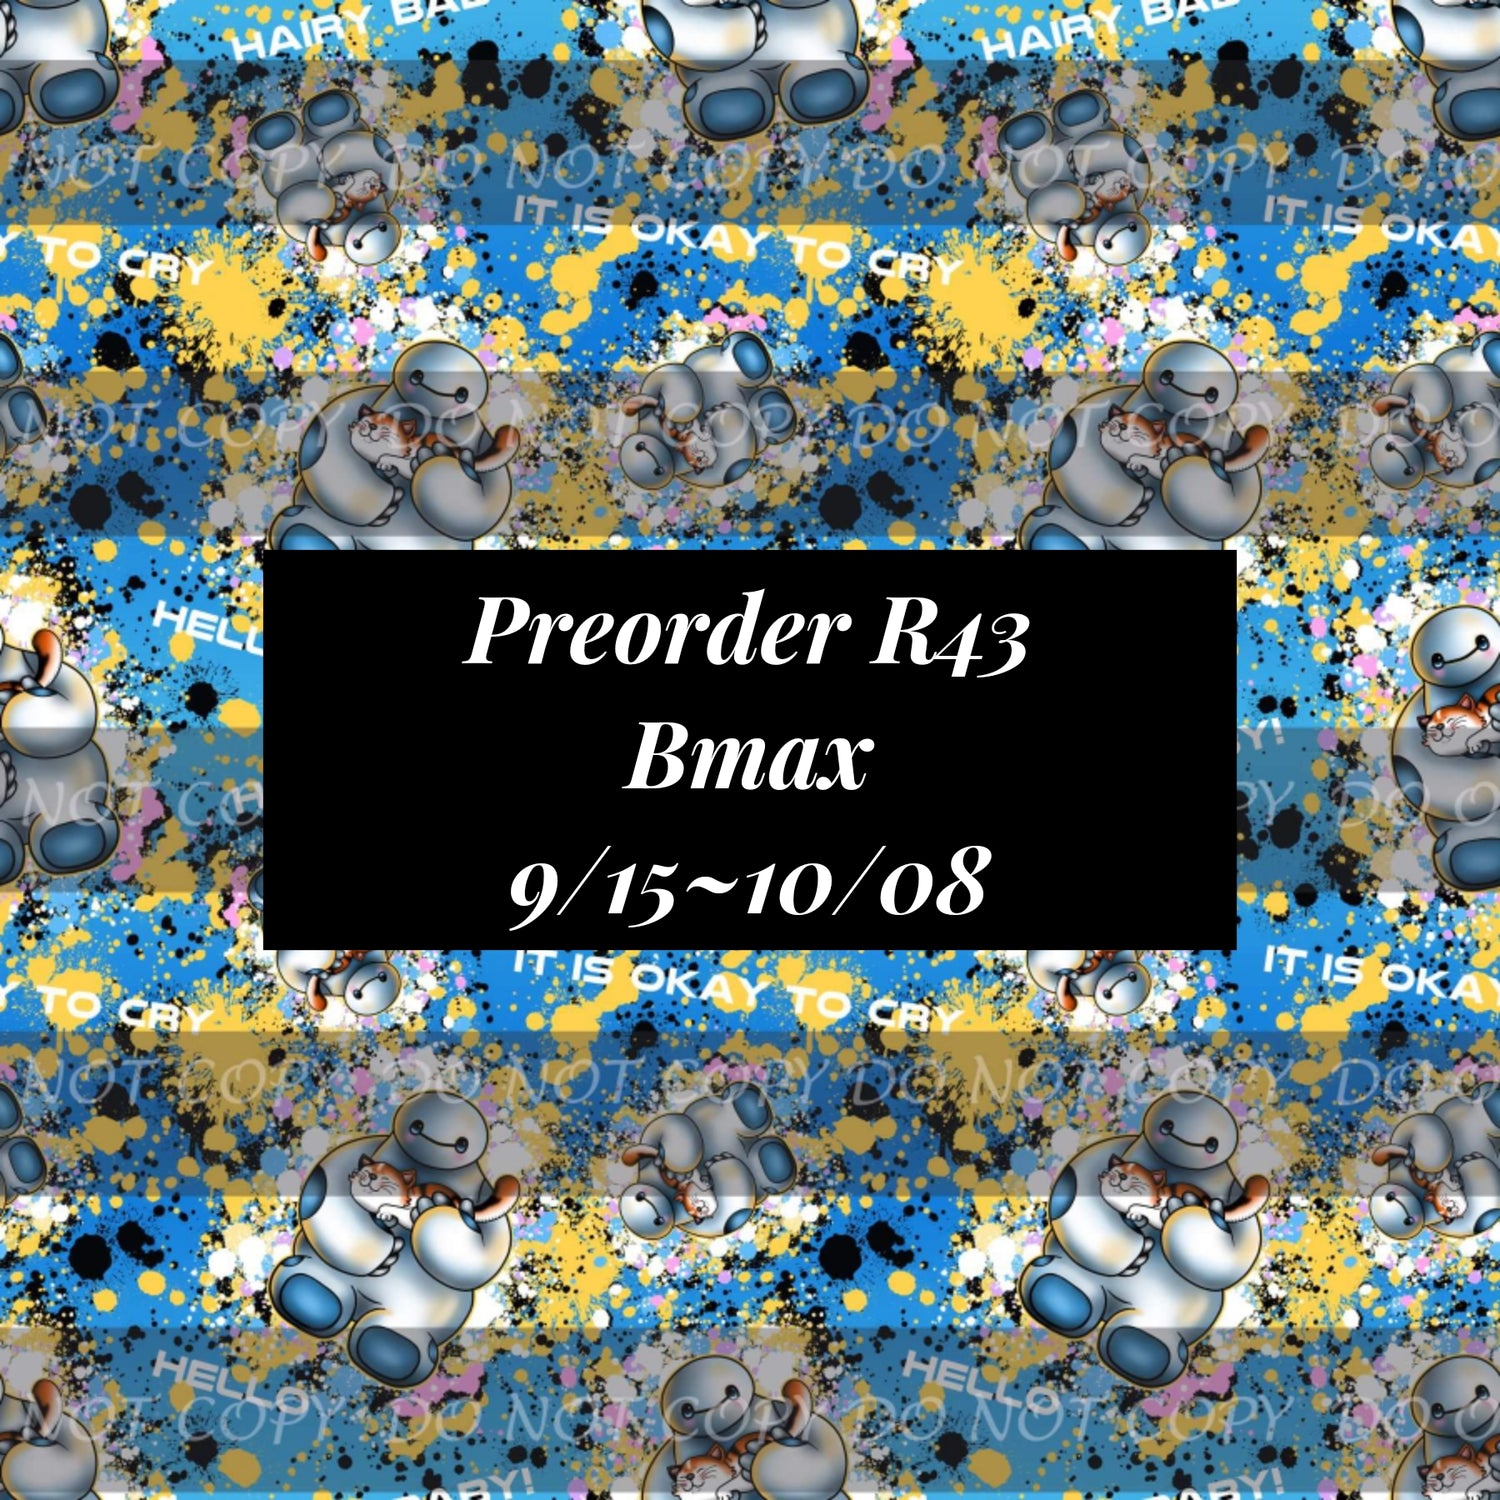 PREORDER R43 - Bmax